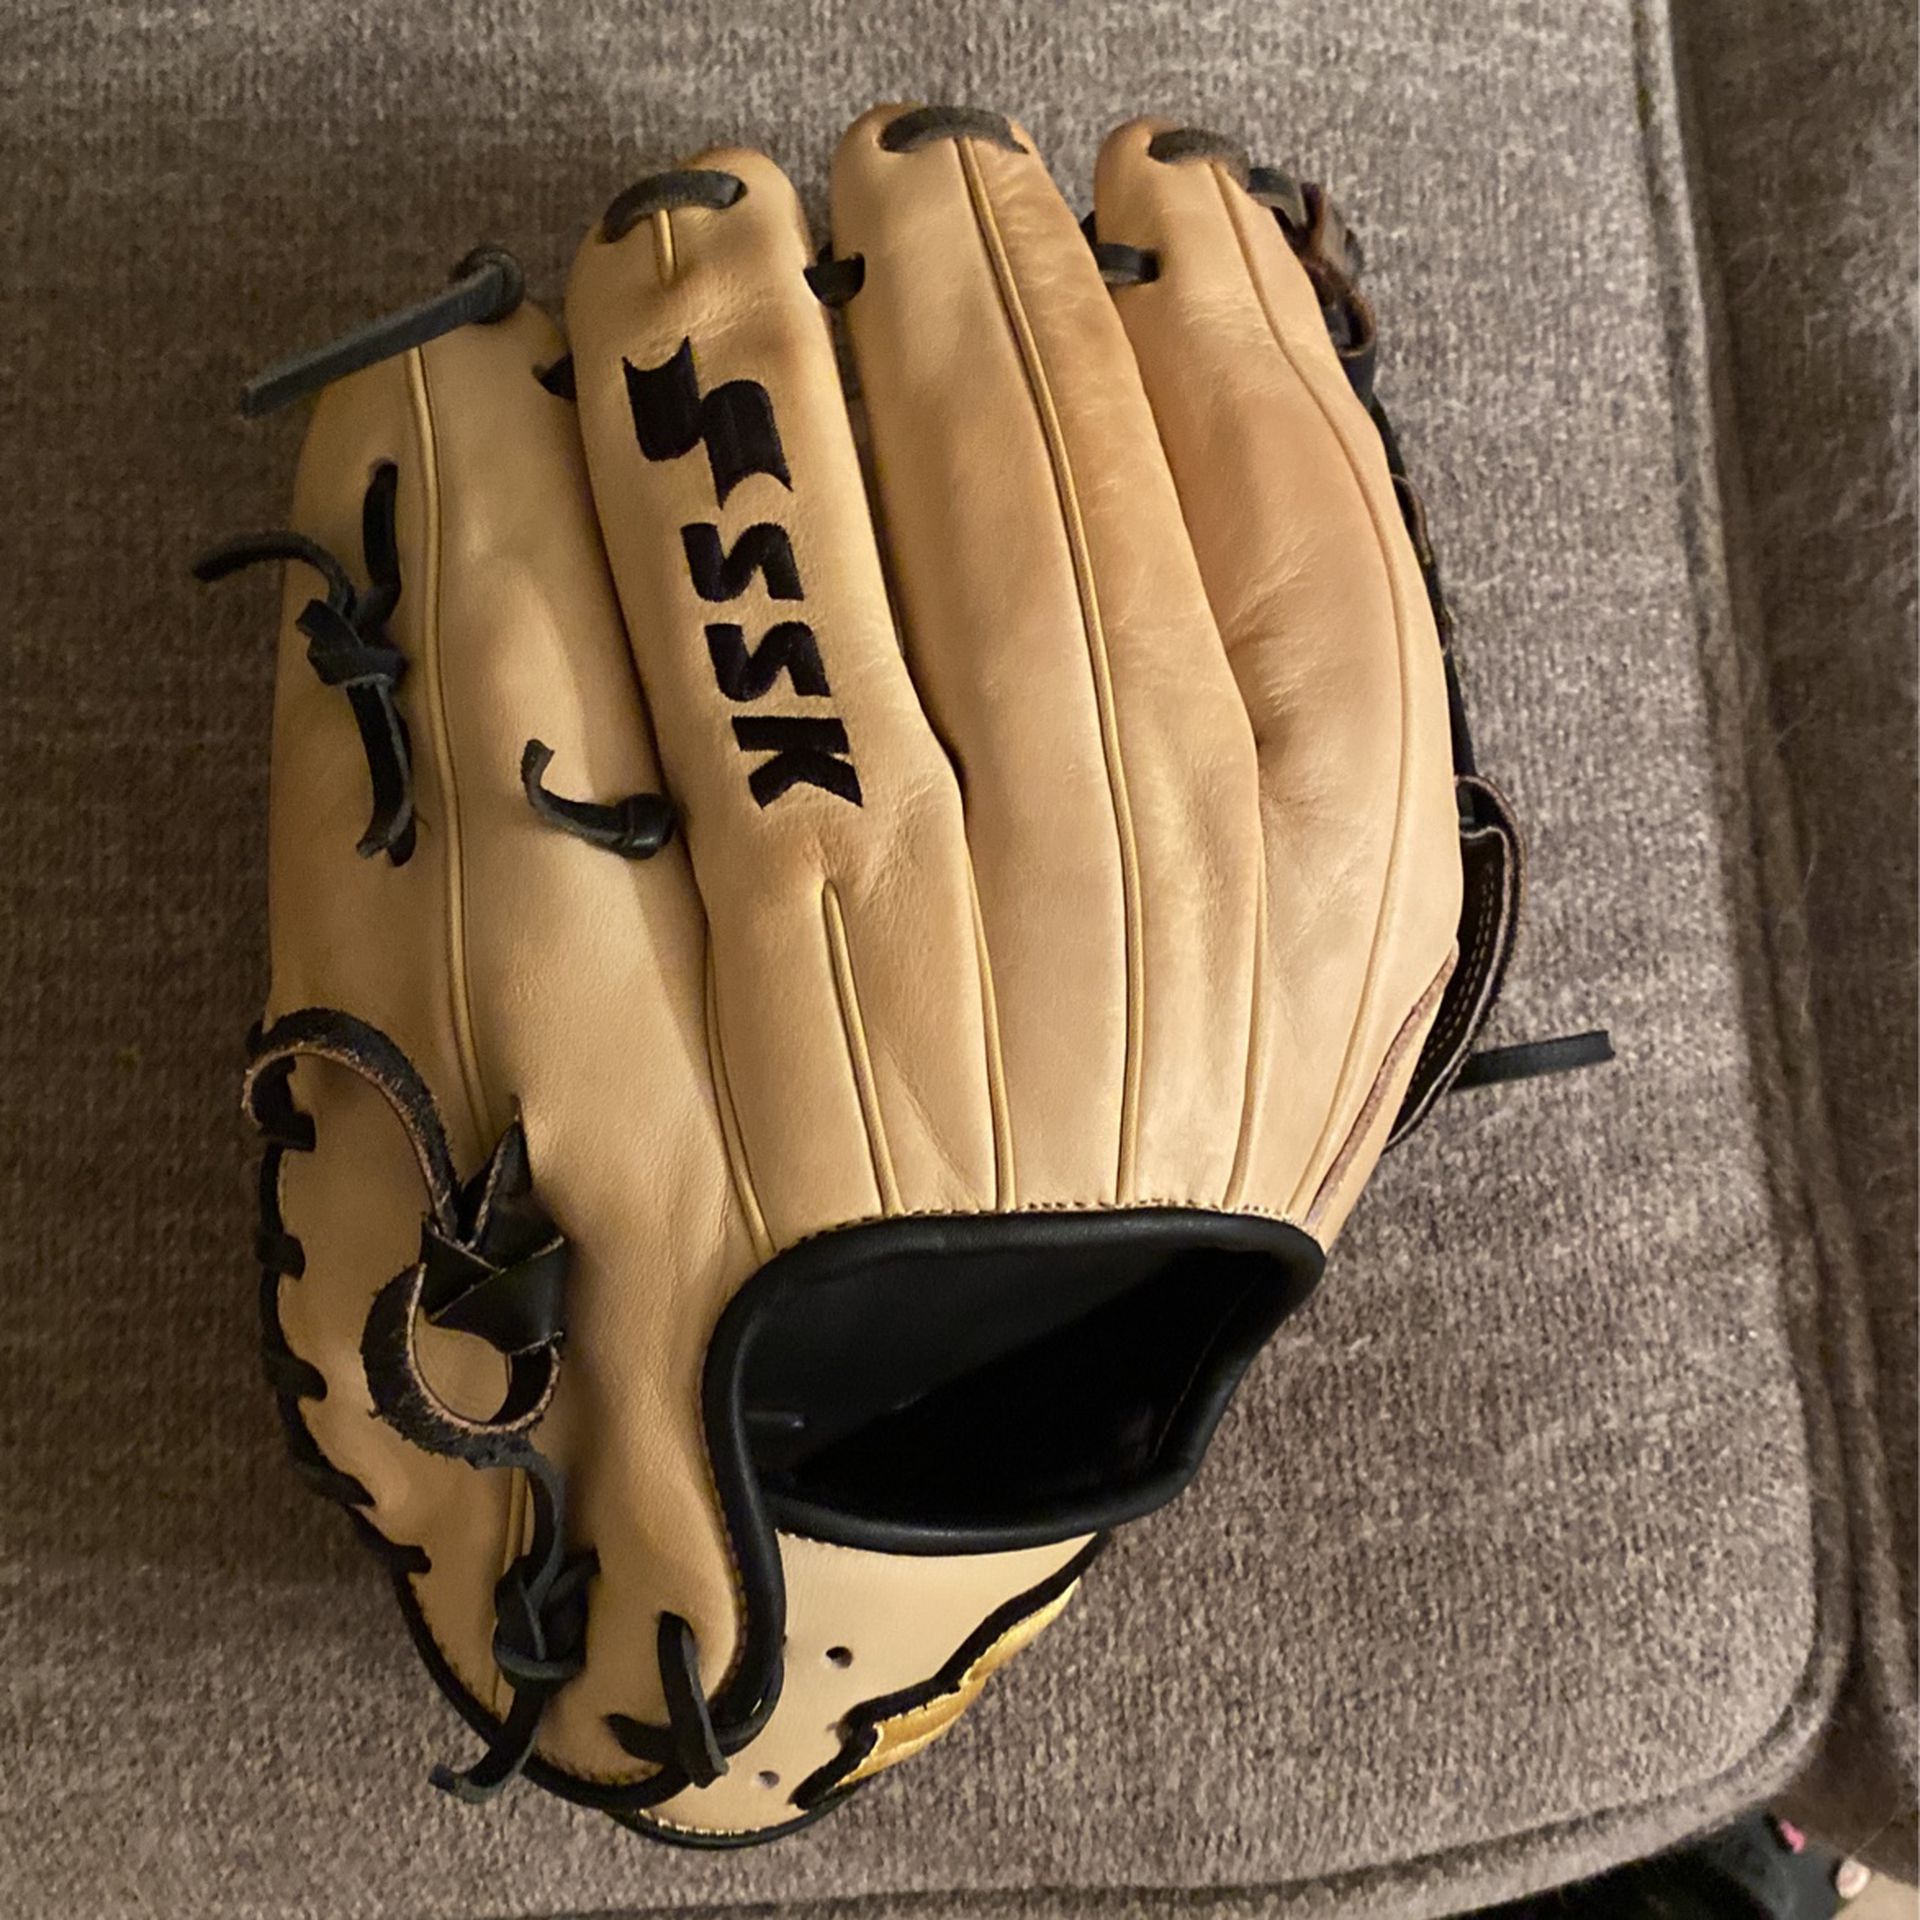 Ssk Baseball Glove Size 12